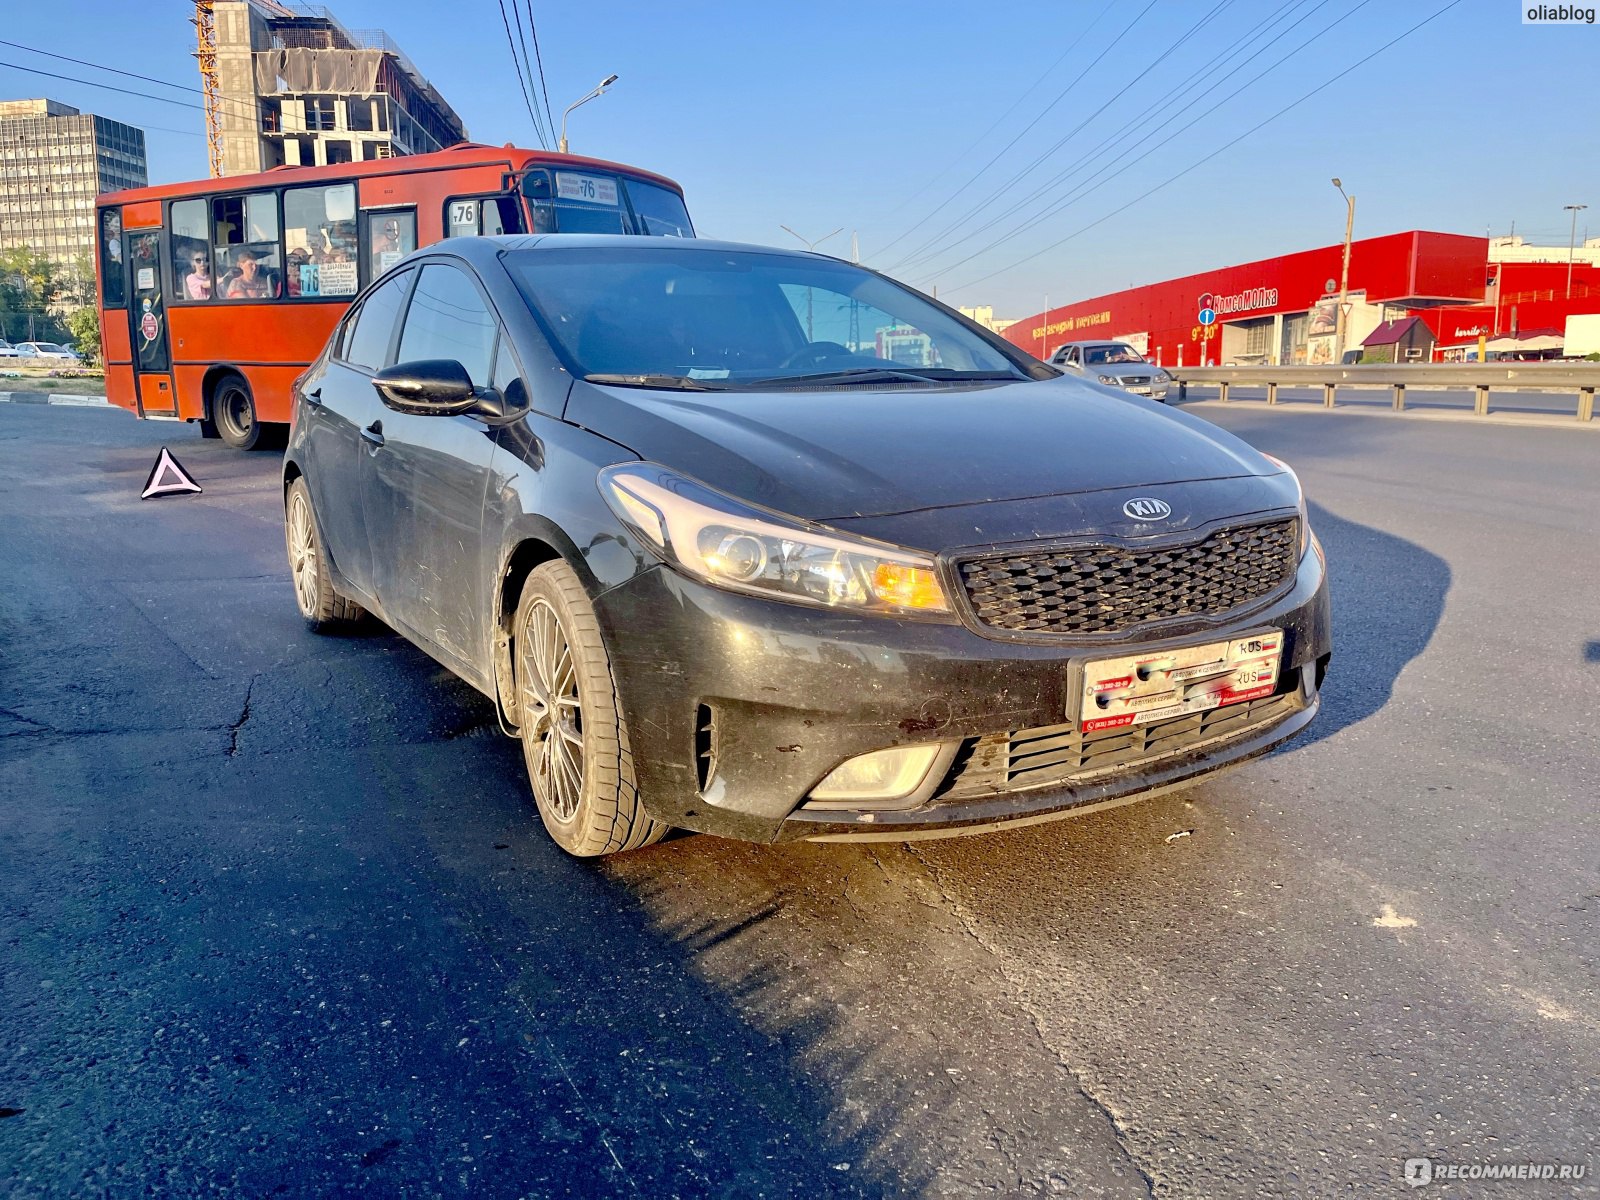 Грязное авто после дтп, ущерб 70 тысяч рублей (незначительный)